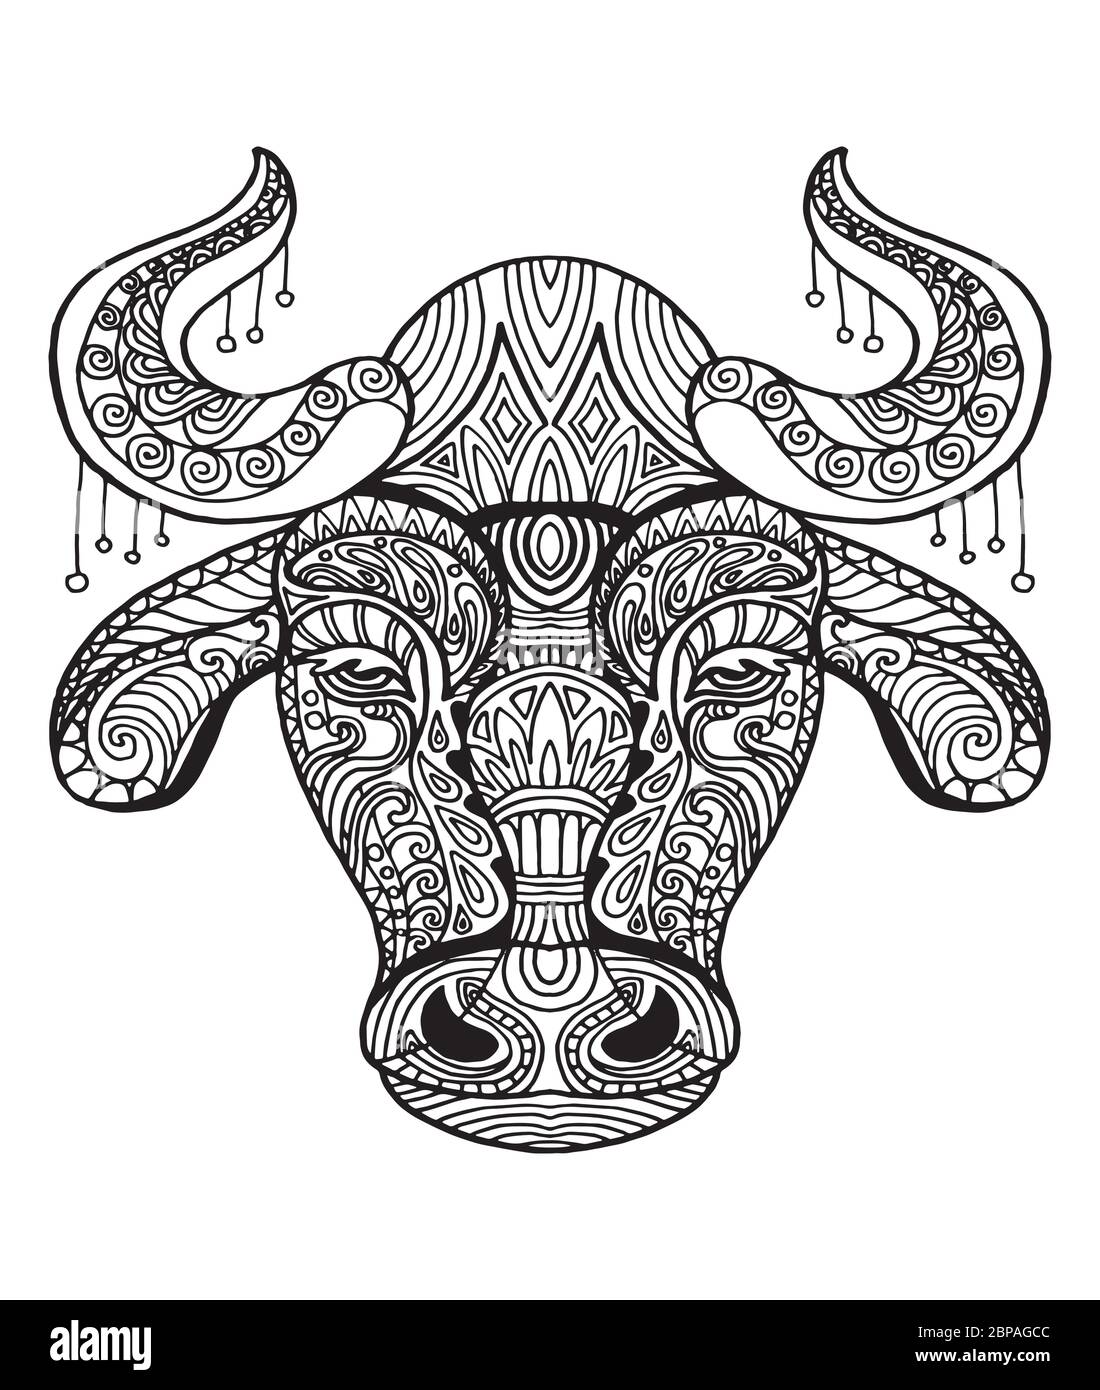 Motif vectoriel décoratif de la tête de taureau. Illustration vectorielle abstraite d'un contour noir de taureau isolé sur fond blanc. Illustration du stock Illustration de Vecteur